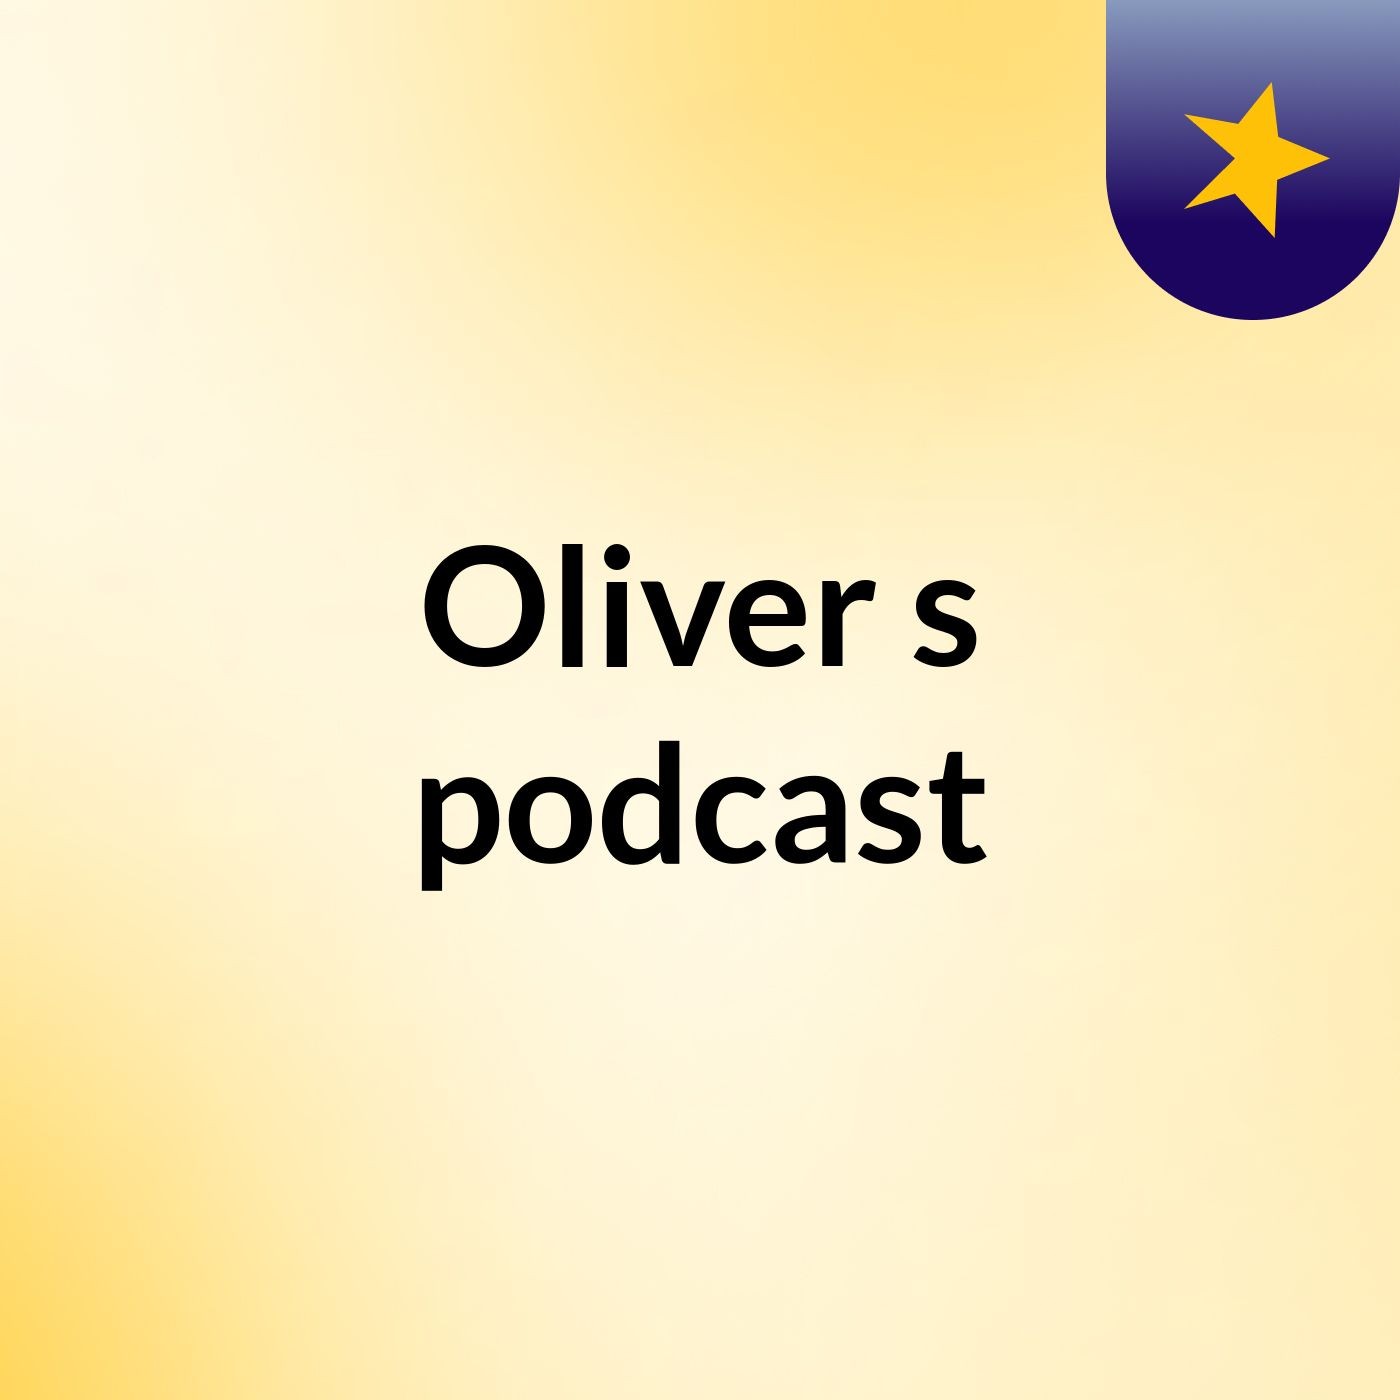 Episode 2 - Oliver's podcast